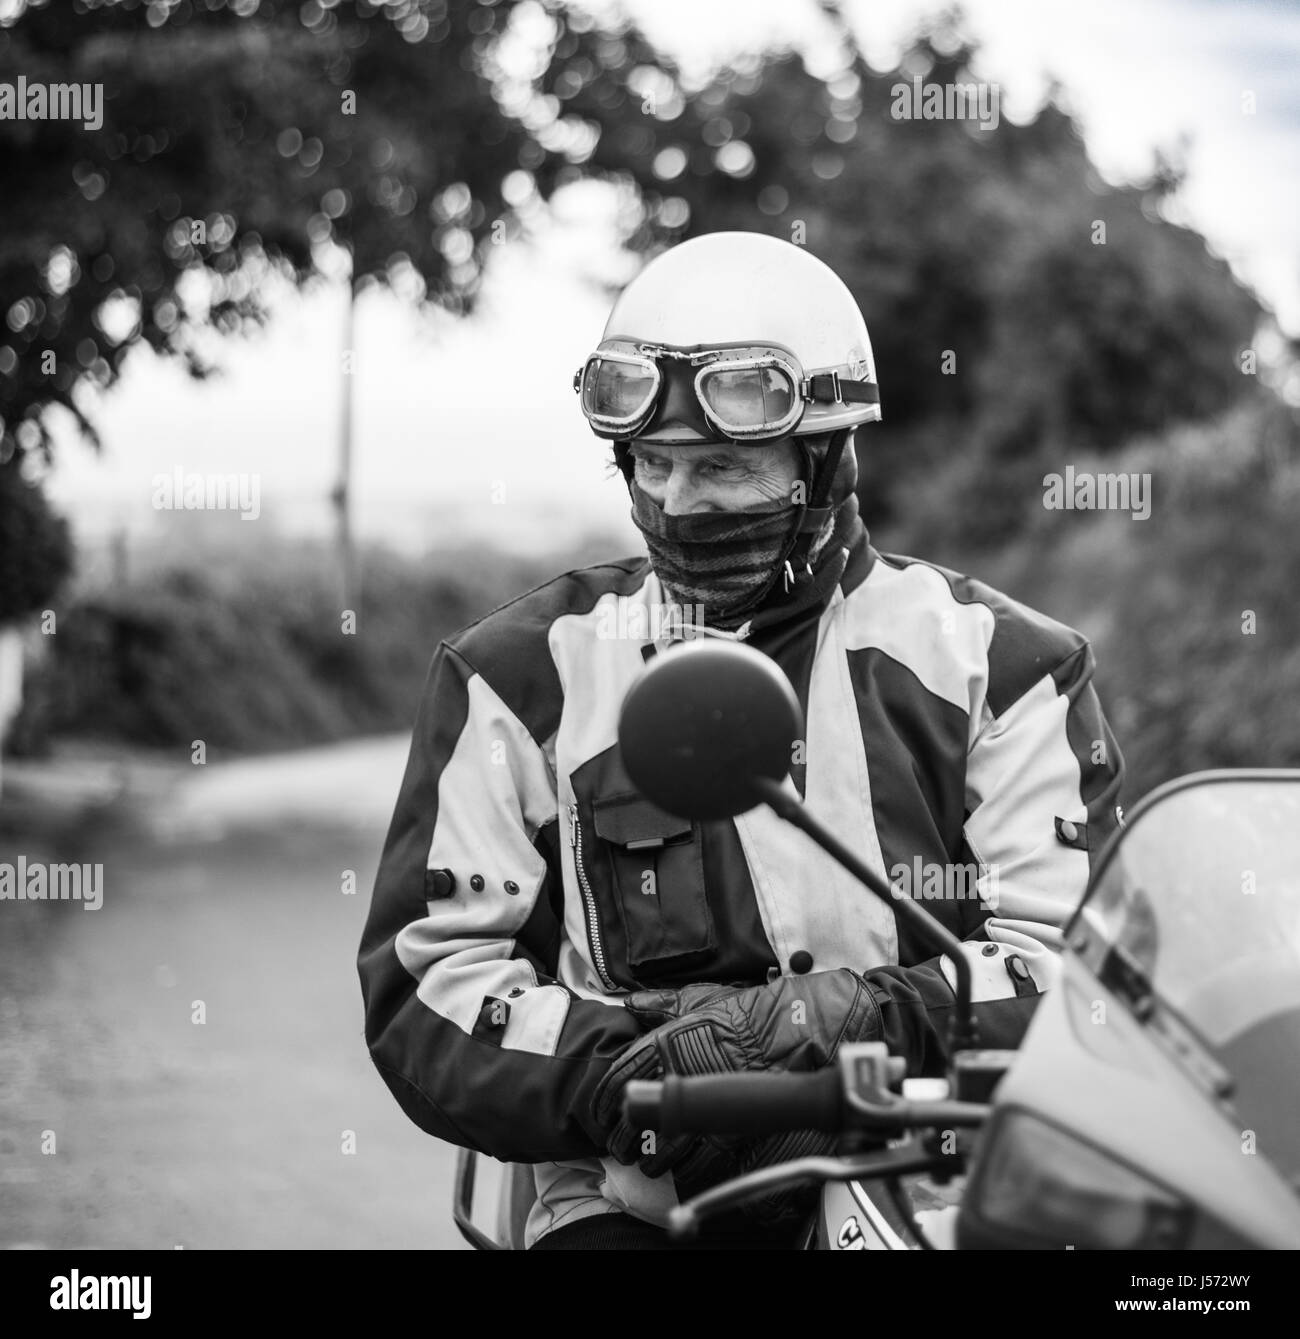 Old motorbiker wearing biking gear on his bike Stock Photo